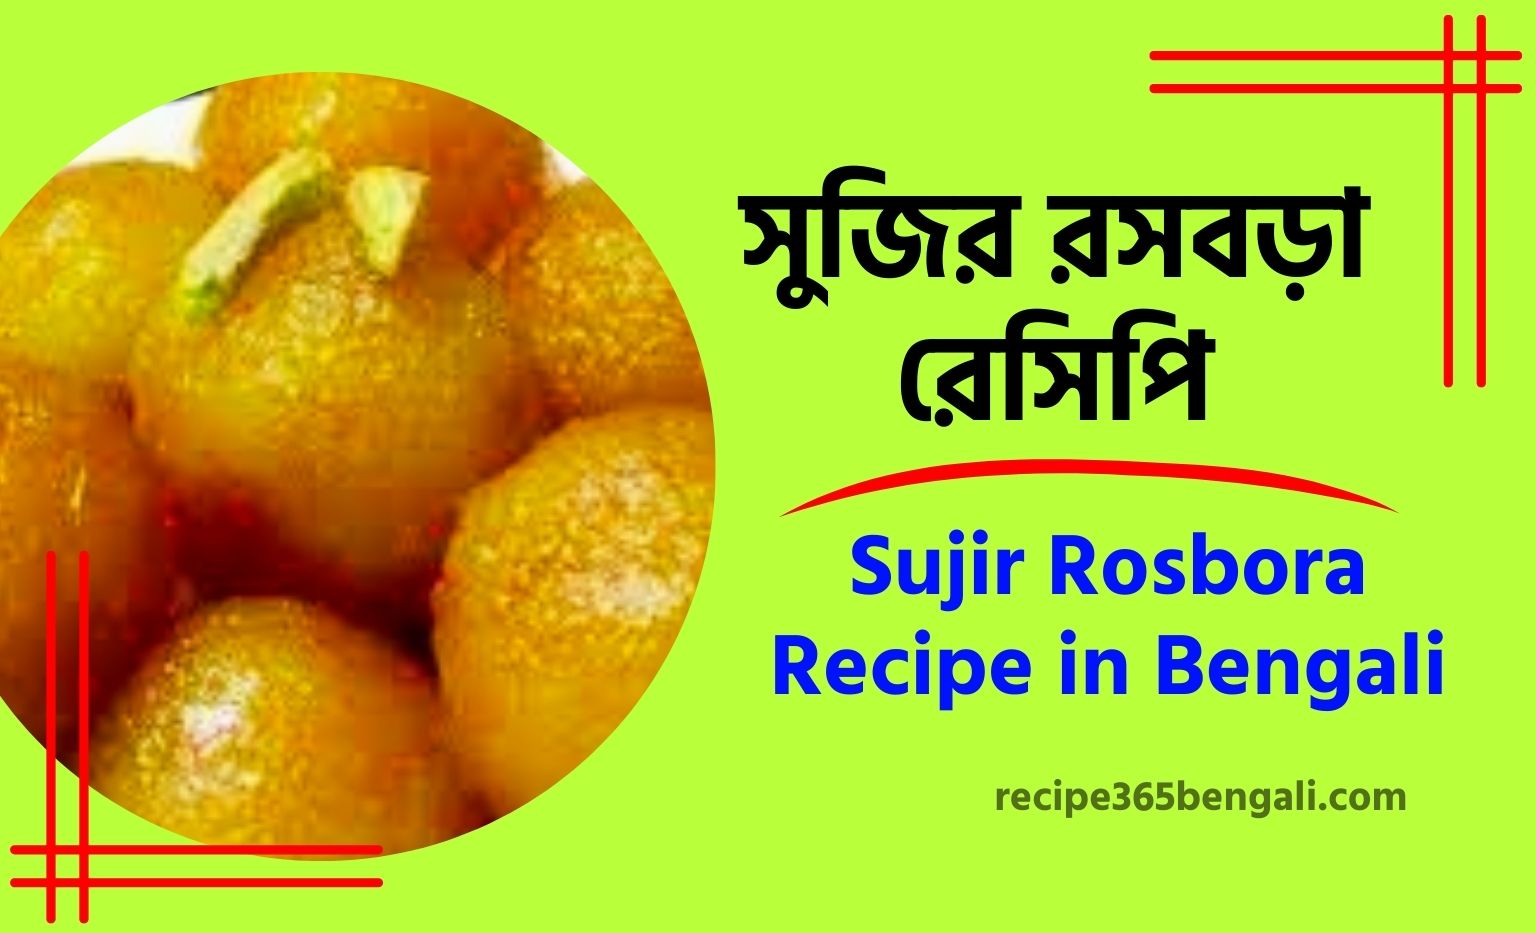 Sujir Rosbora Recipe in Bengali